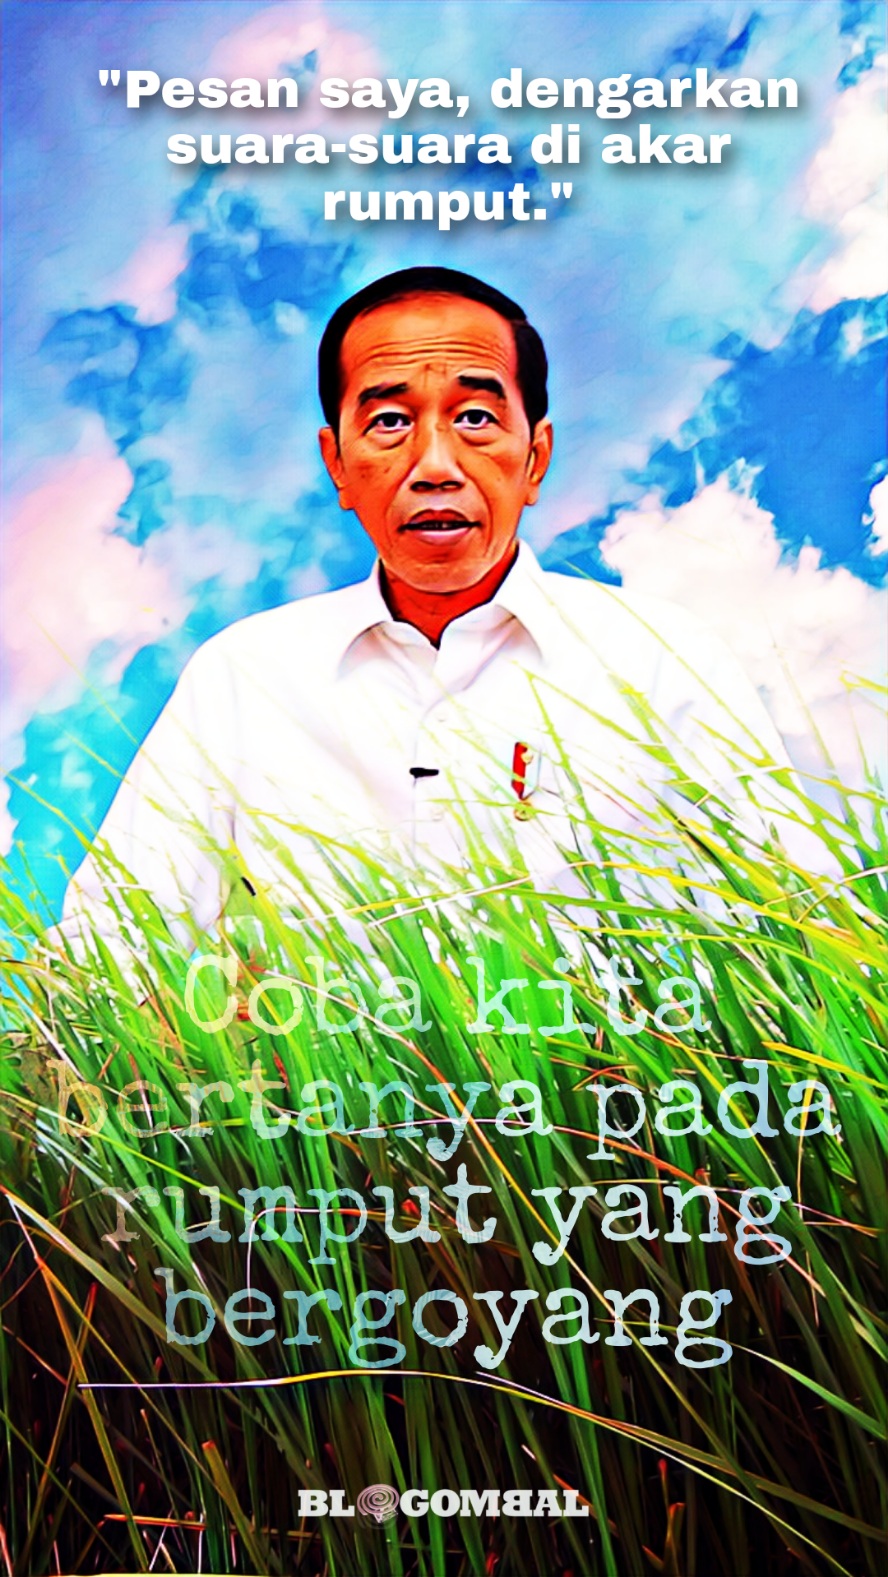 Jokowi minta relawan dengarkan suara akar rumput 